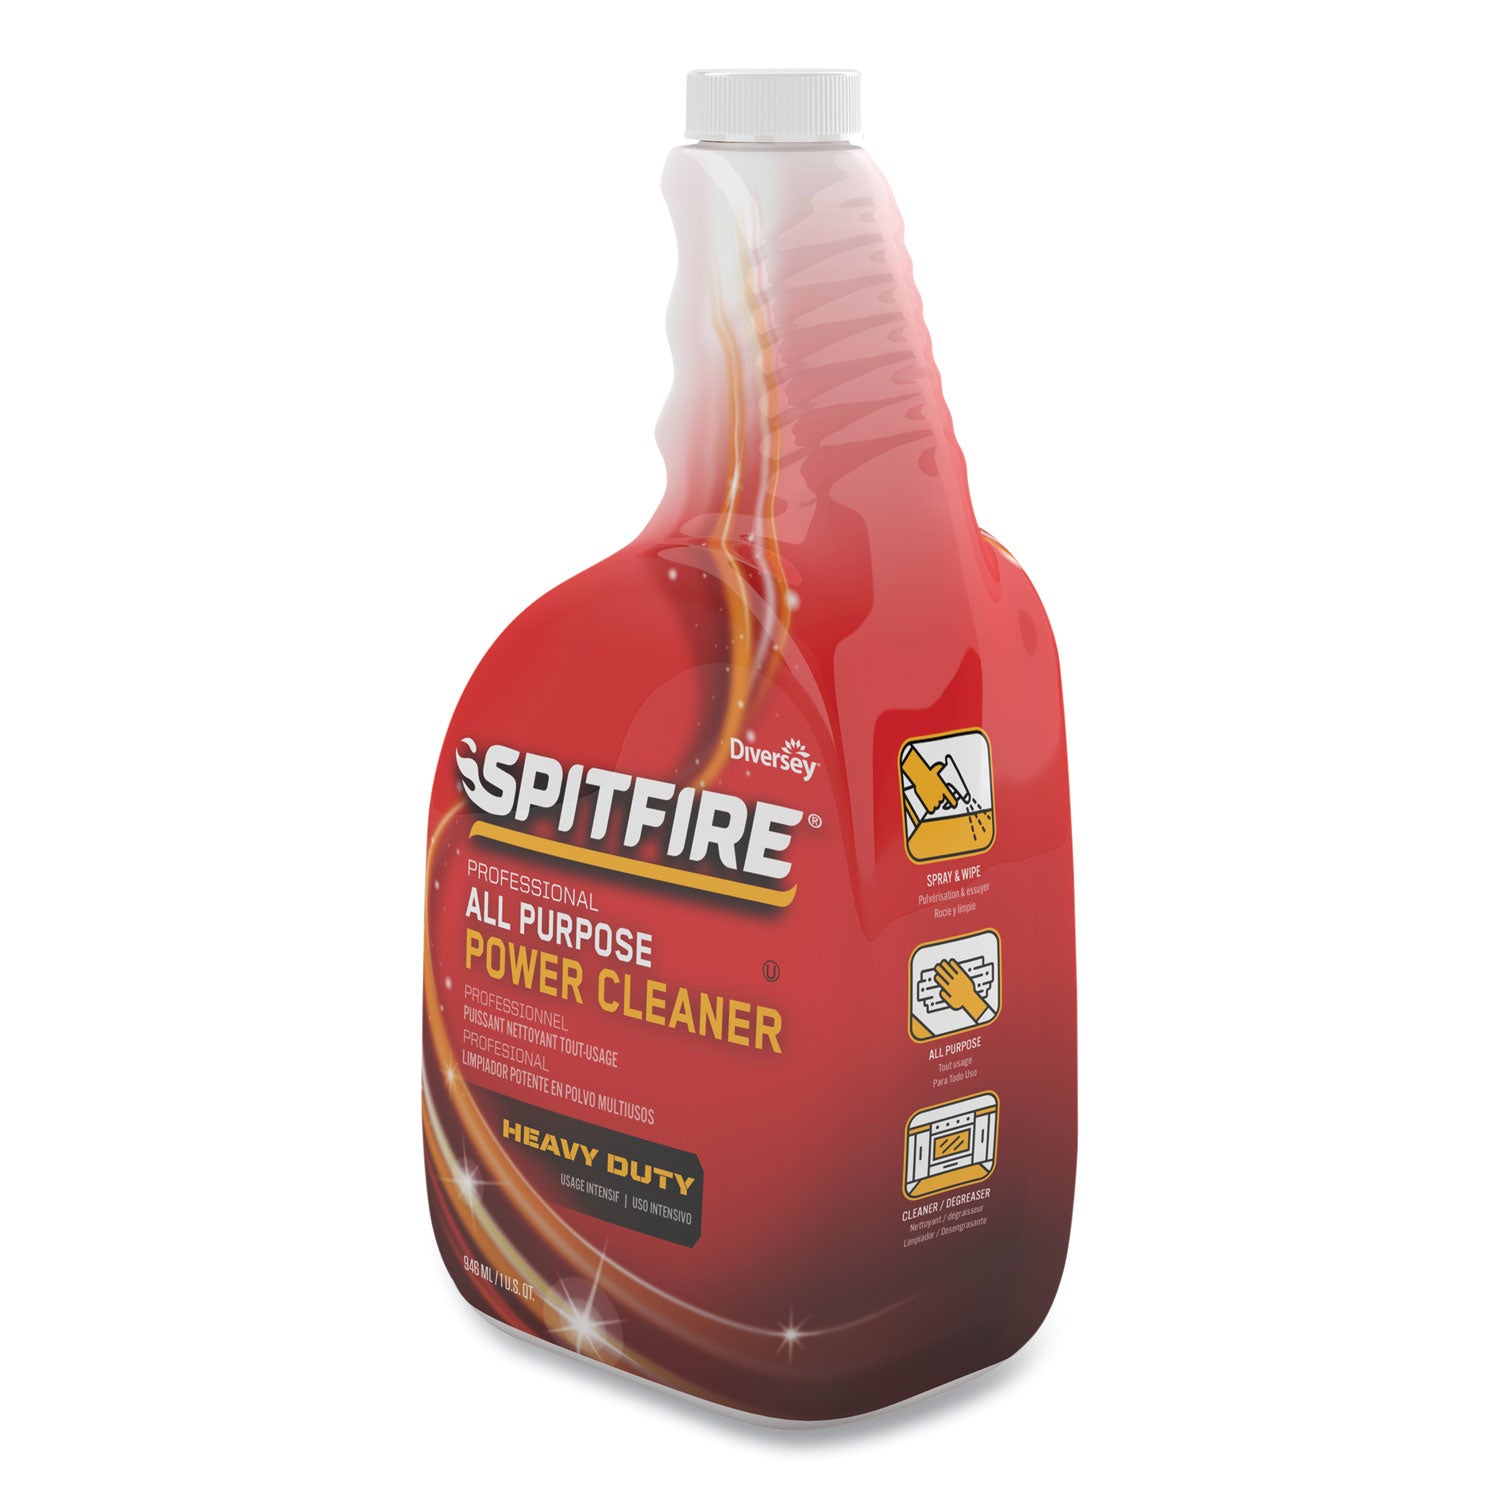 spitfire-all-purpose-power-cleaner-32-oz-spray-bottle_dvocbd540038ea - 4